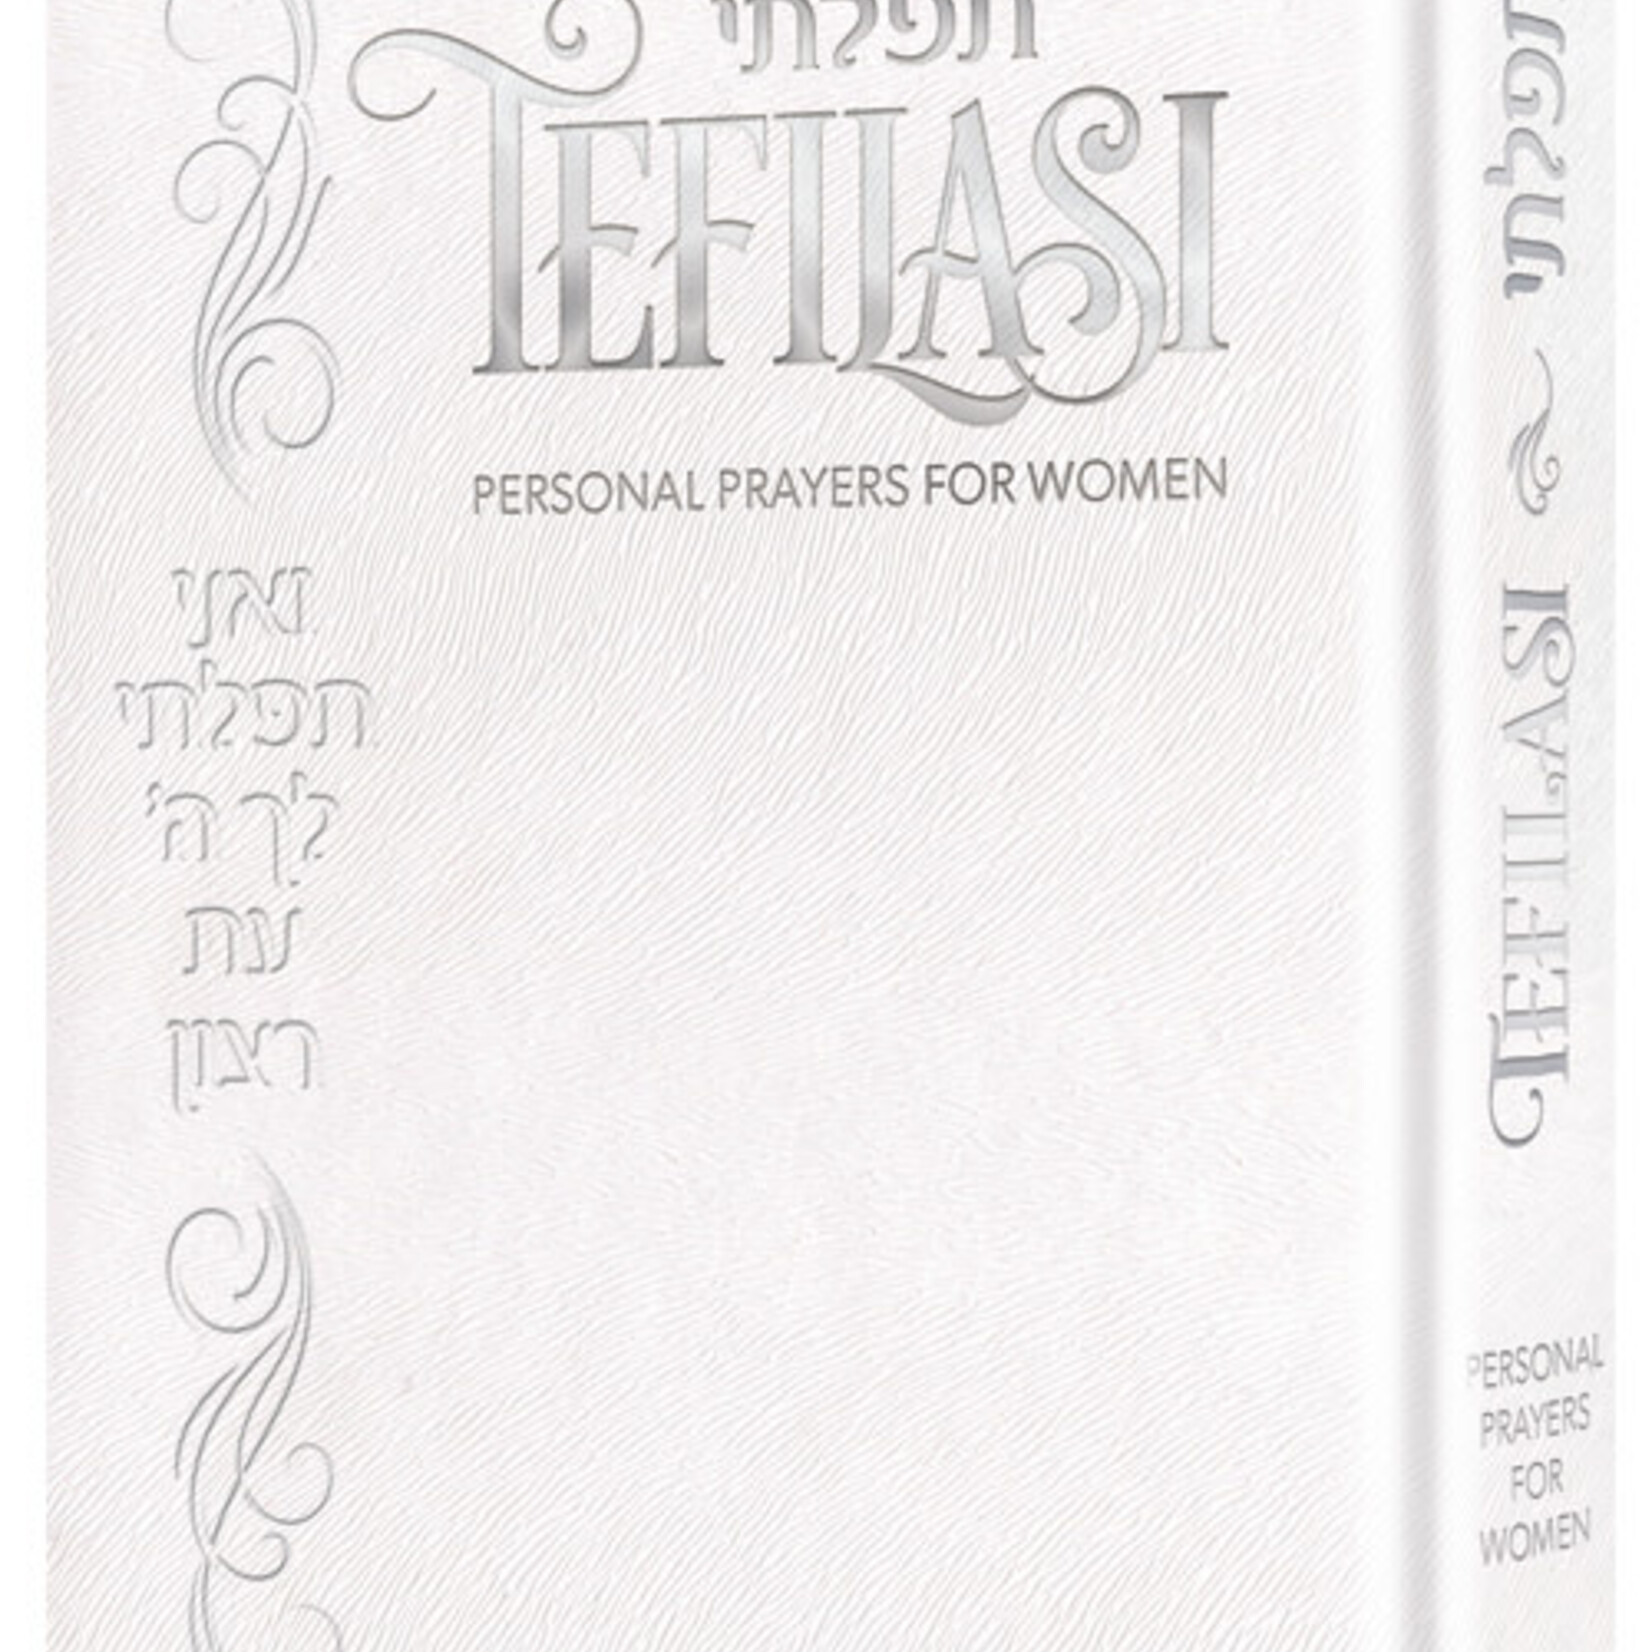 Tefilasi: Personal Prayers for Women